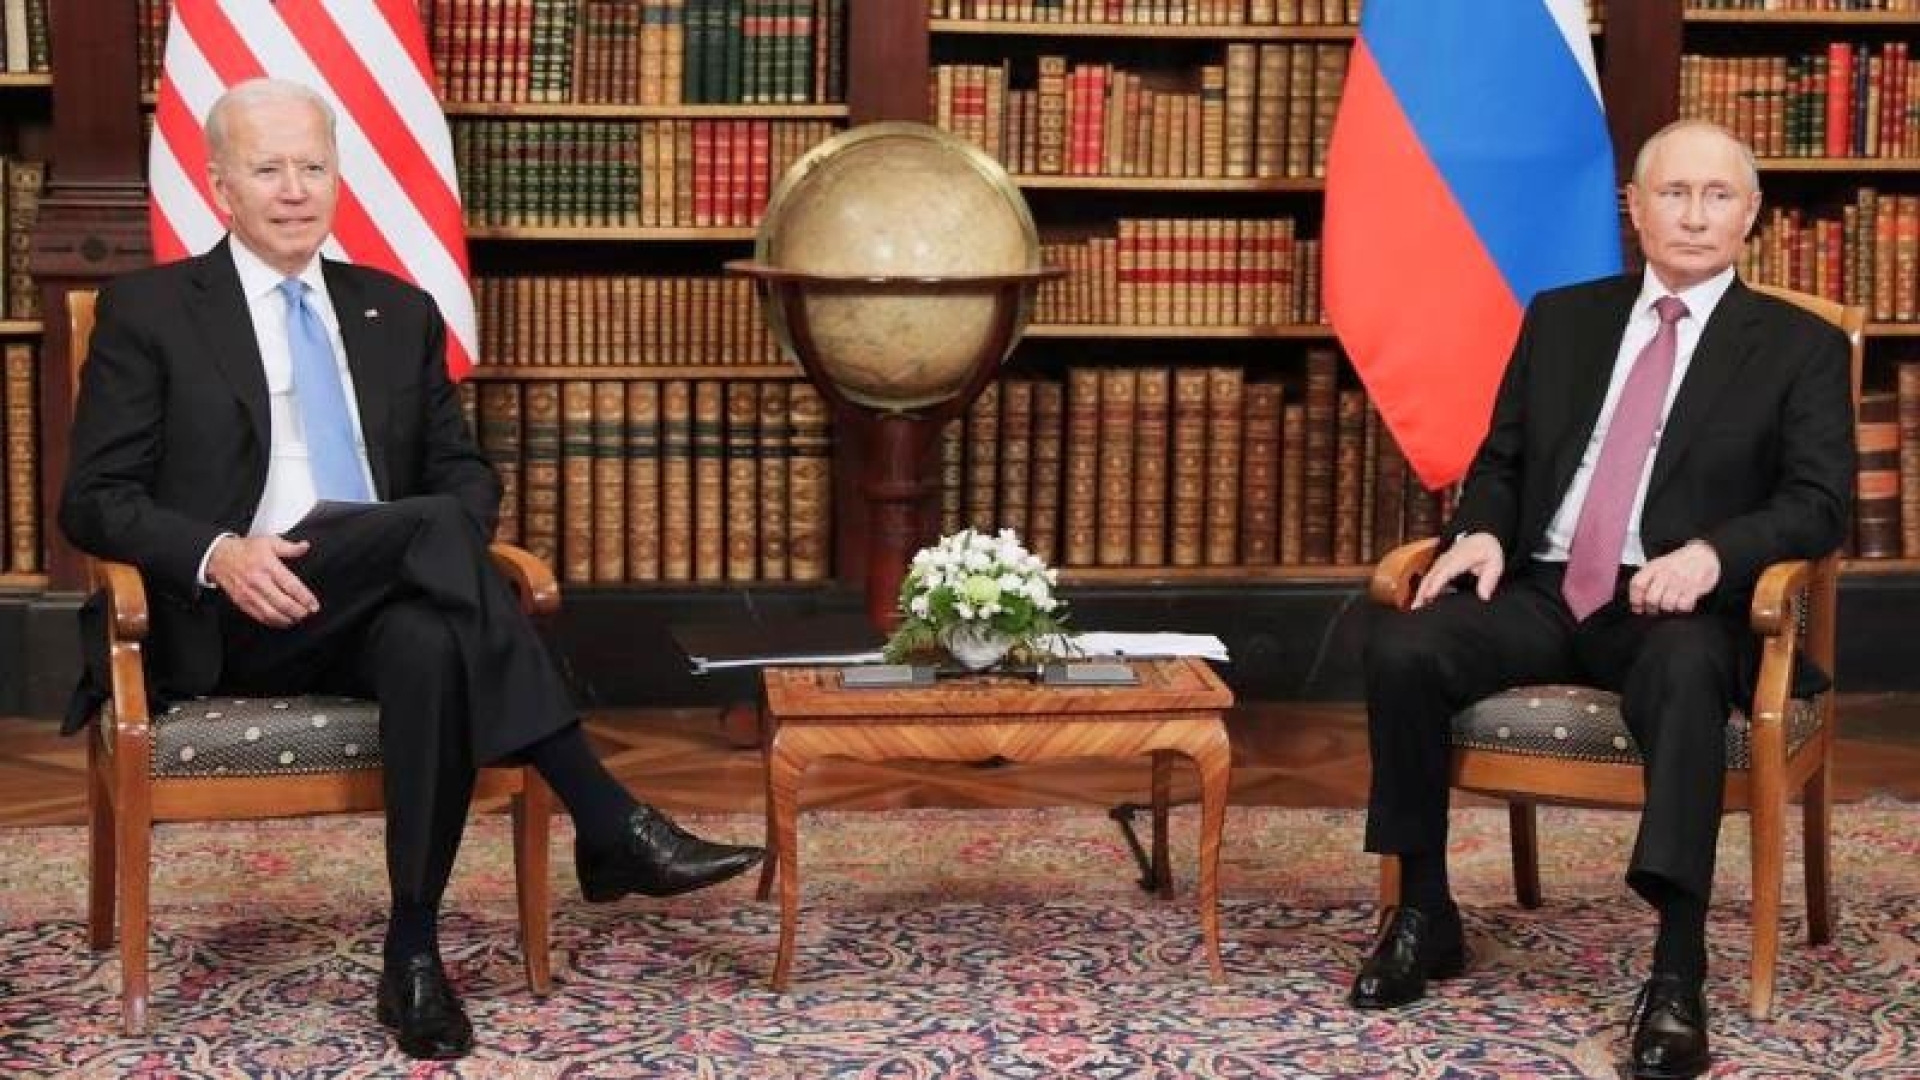 Putin ensured dialogue